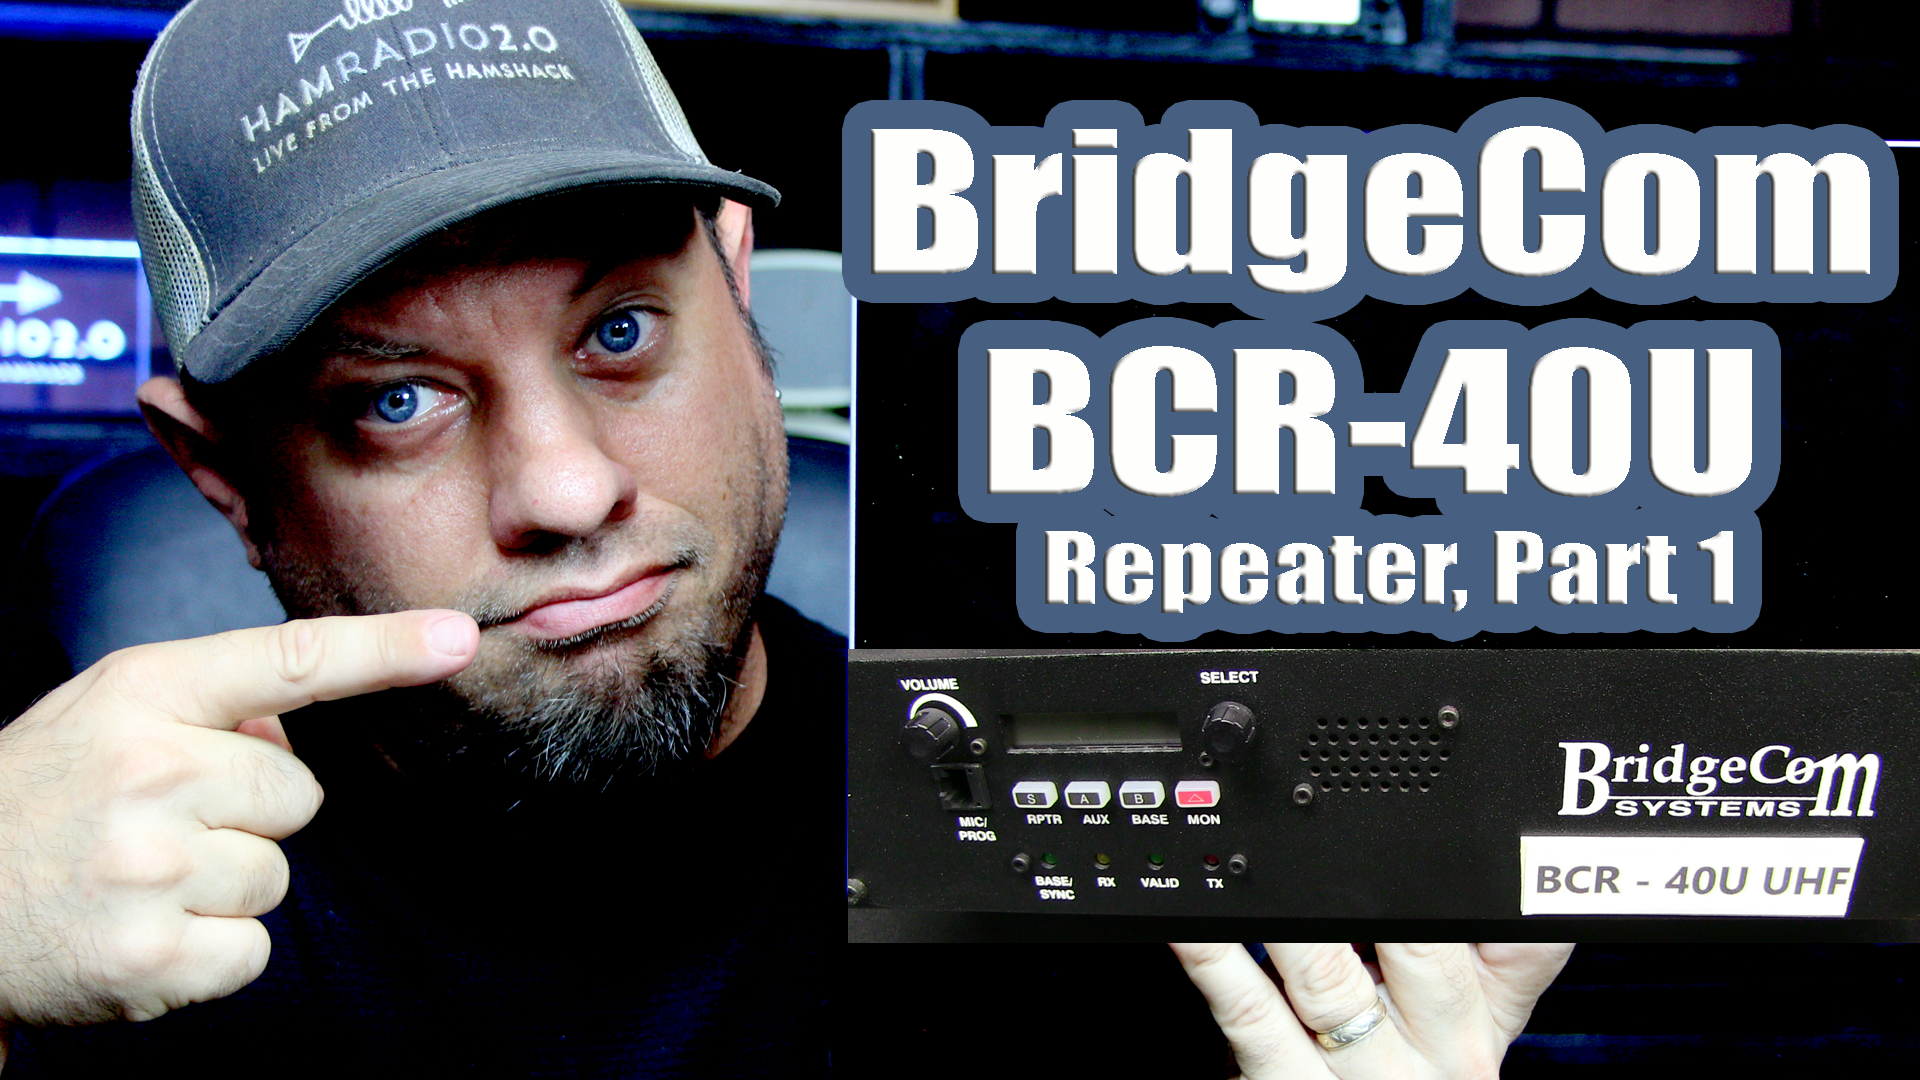 Episode 177: BridgeCom BCR-40U Repeater Setup